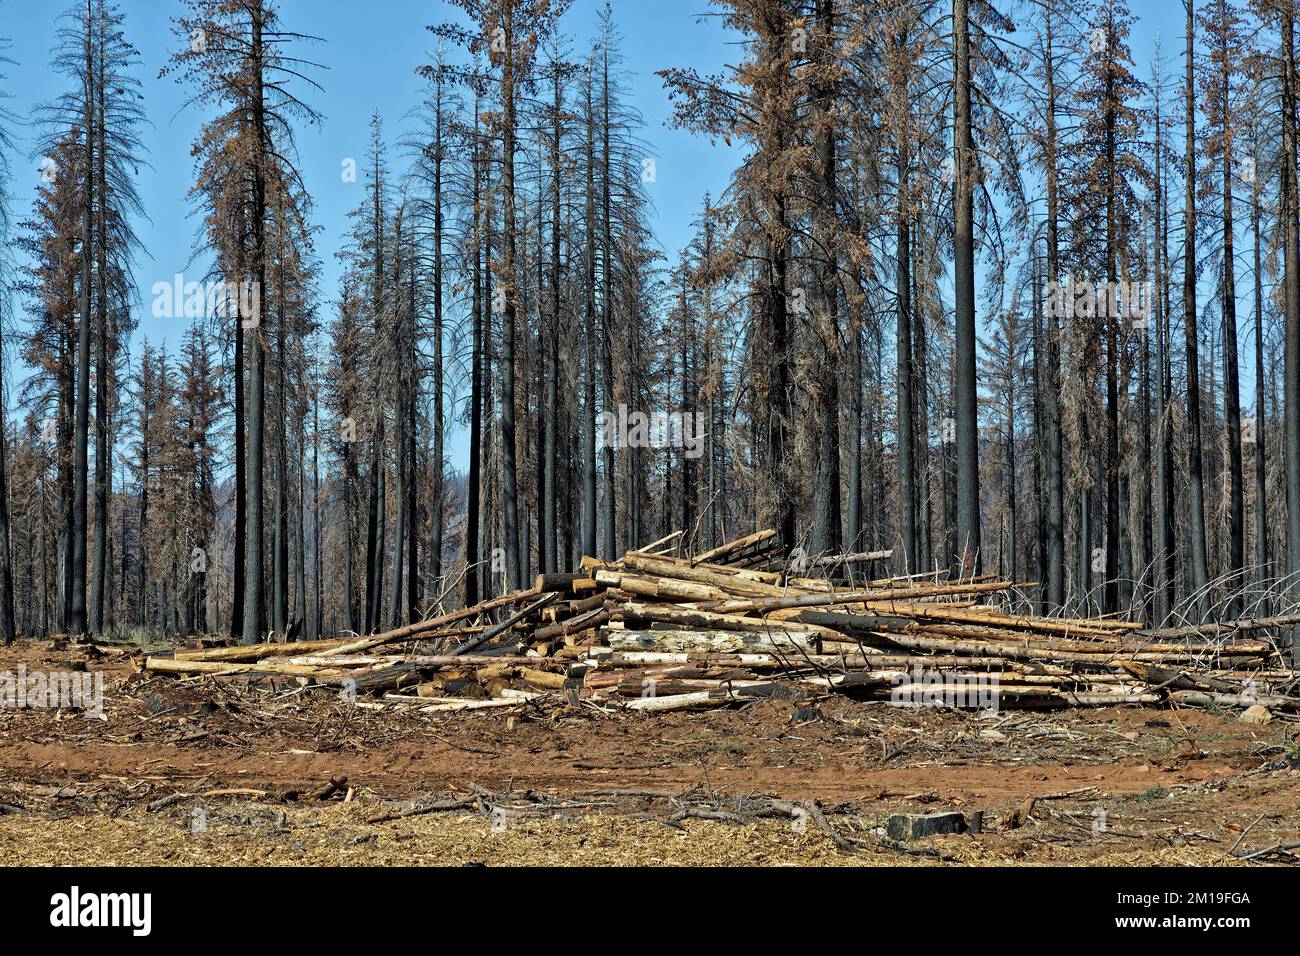 Récupération des arbres brûlés, résultant d'un incendie de forêt, affectant le jeune Douglas Fir, Ponderosa & Sugar Pine, Highway 36, Californie. Banque D'Images